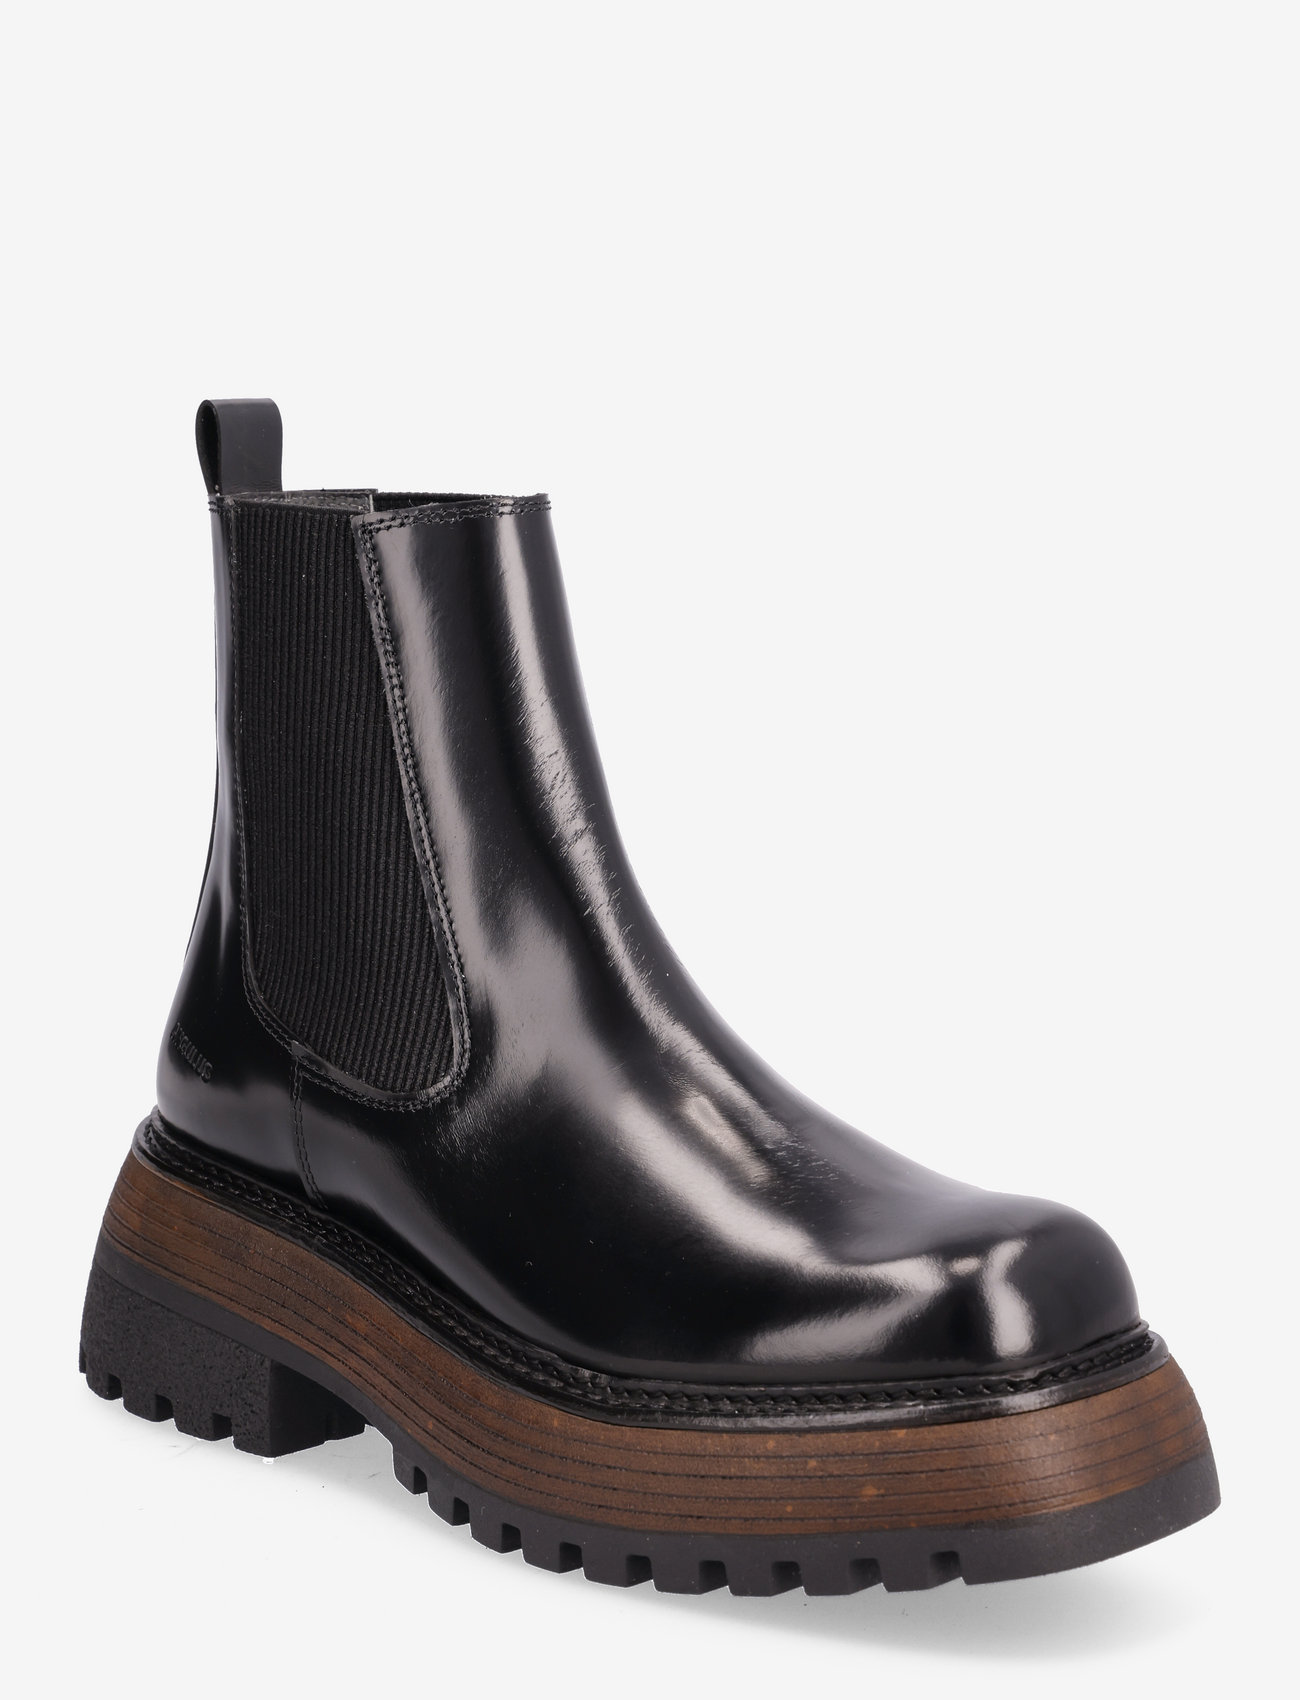 ANGULUS - Boots - flat - chelsea-saapad - 1425/019 black/black - 0